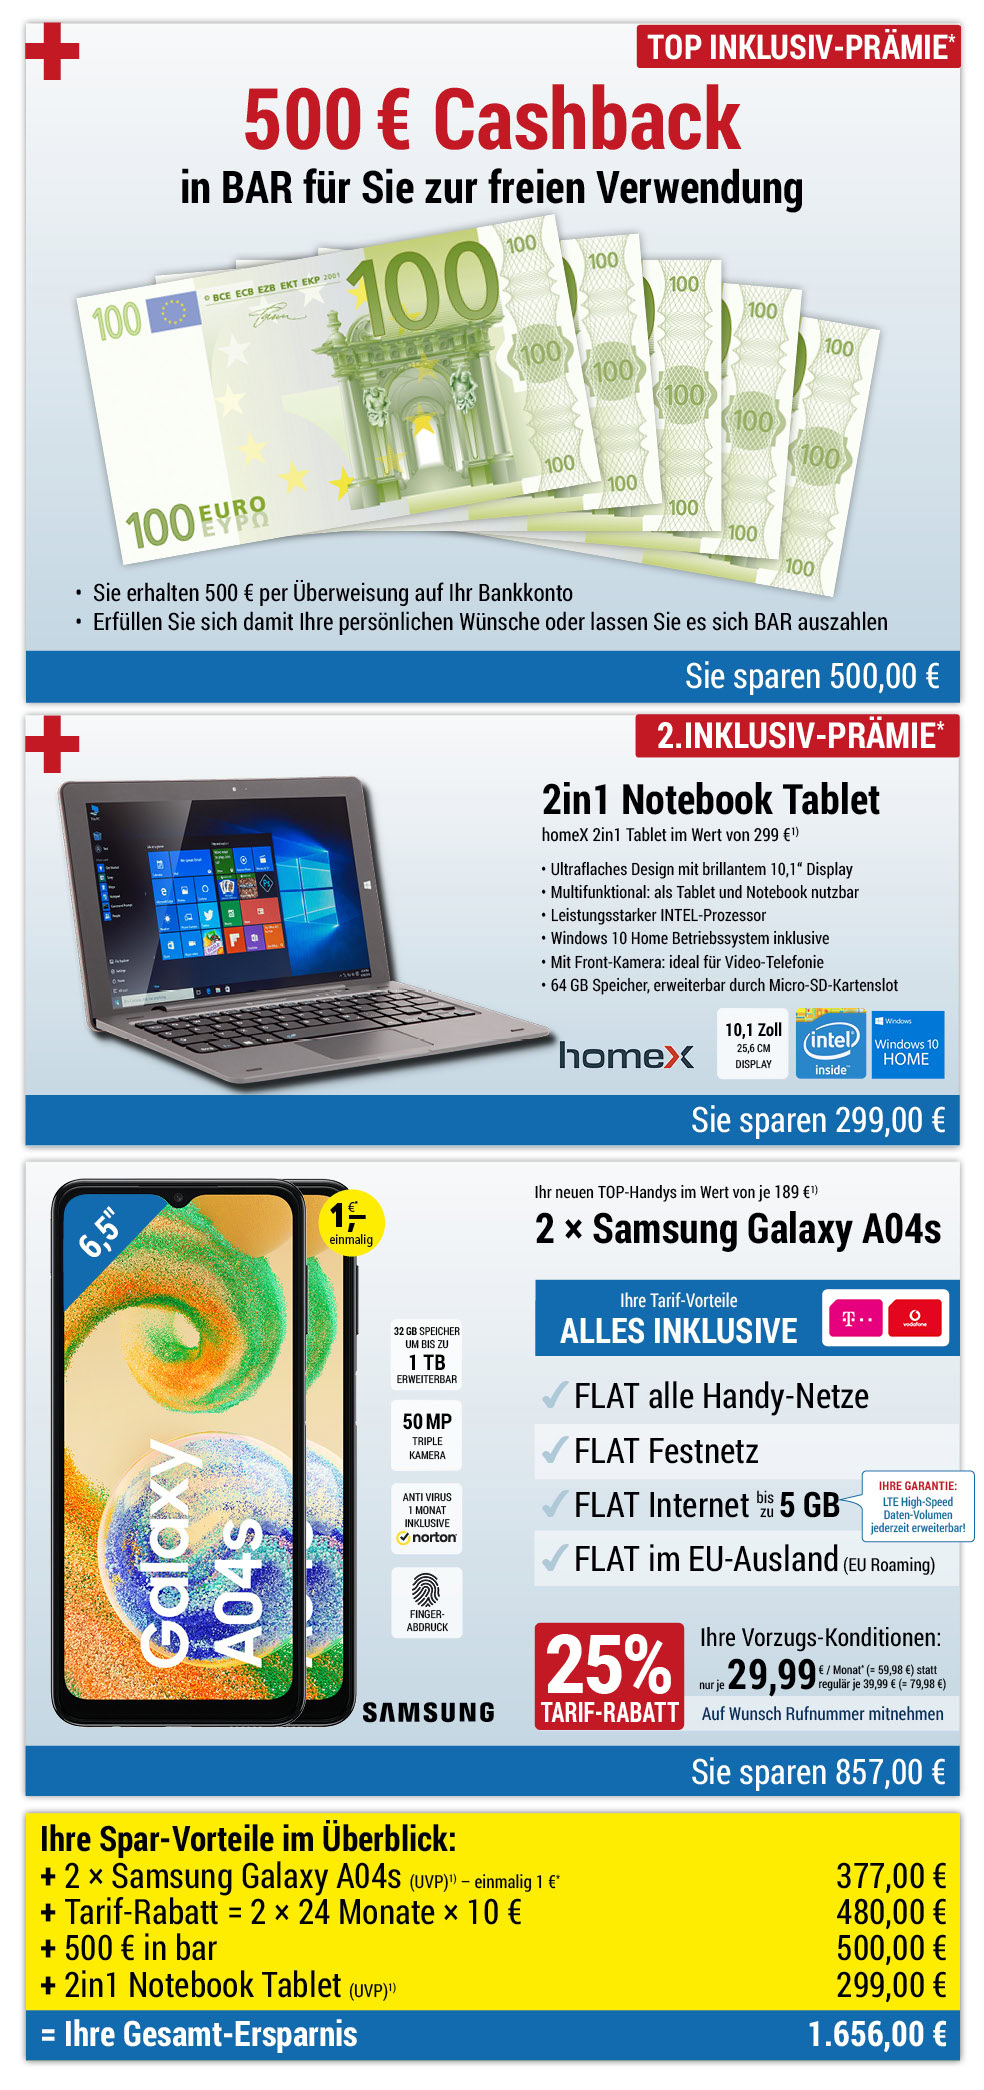 Für nur 1 €*: 2 × Samsung Galaxy A04s + 500 € bar + 2in1 Notebook INKLUSIVE + Handyverträge mit ALL NET FLAT für je 29,99 €/Monat